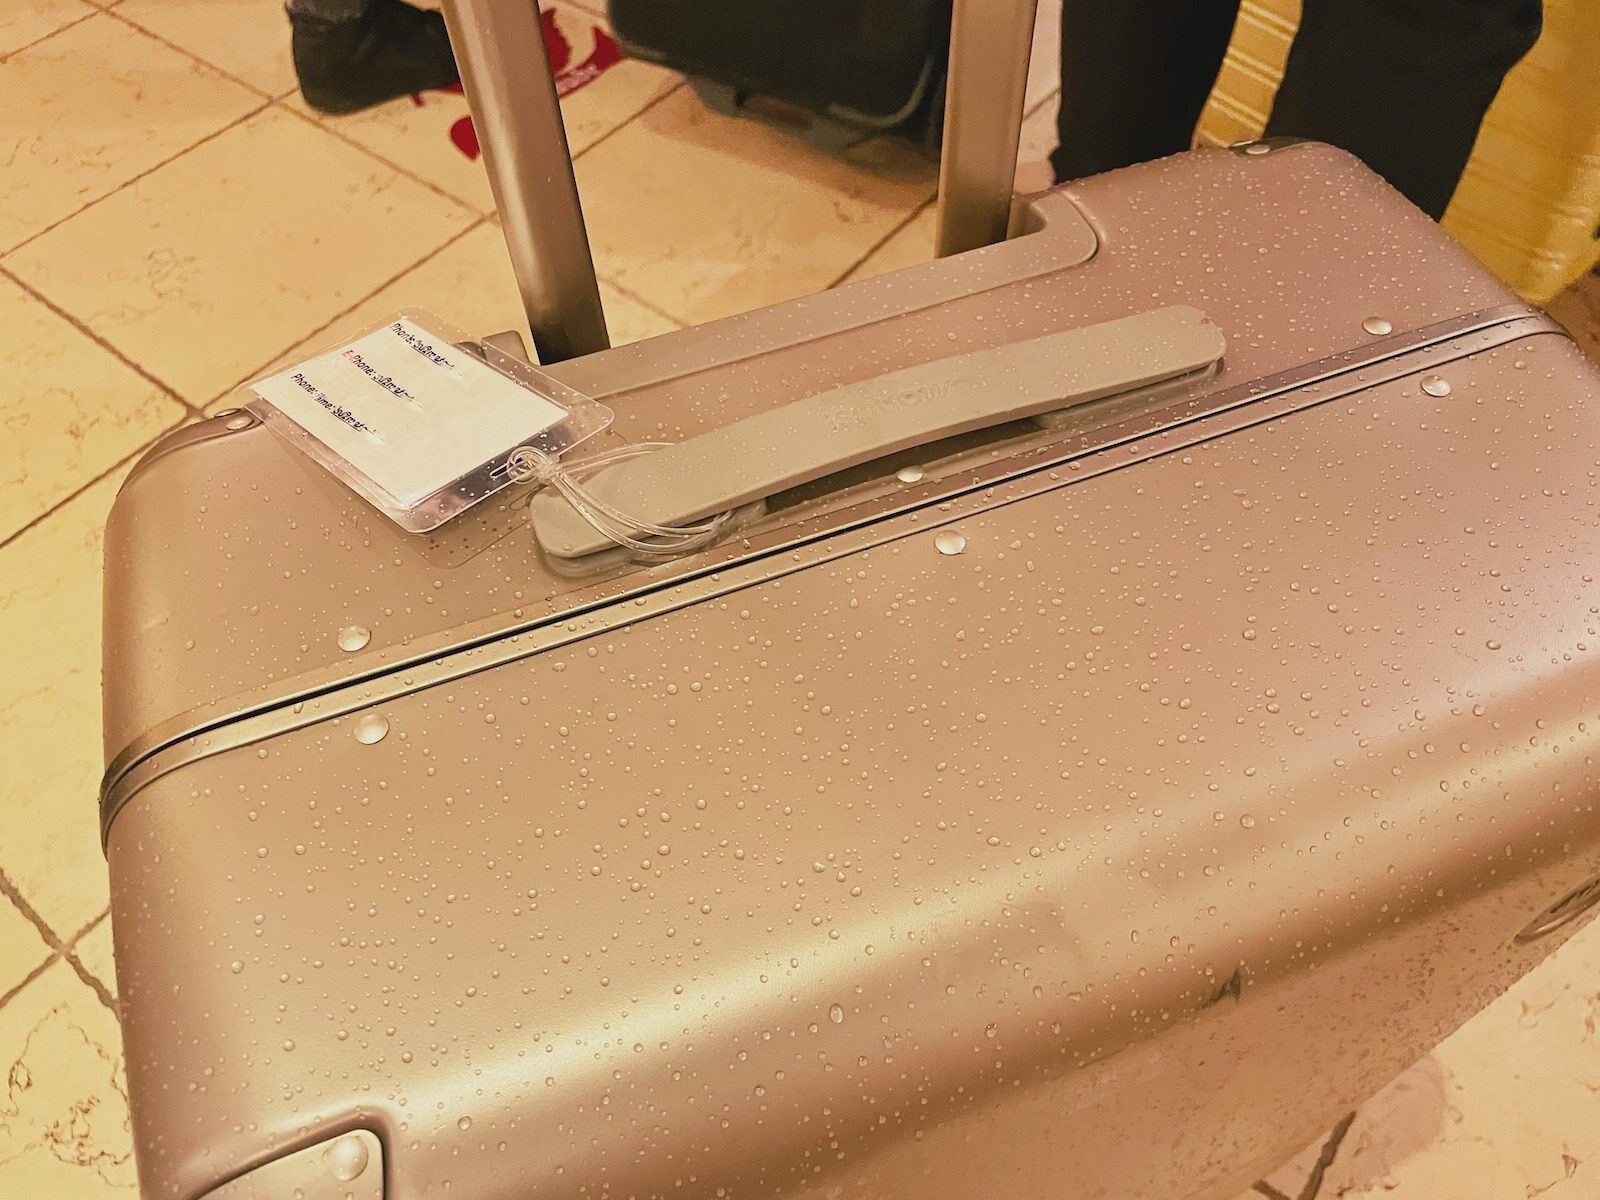 Raindrops on monos luggage hybrid 